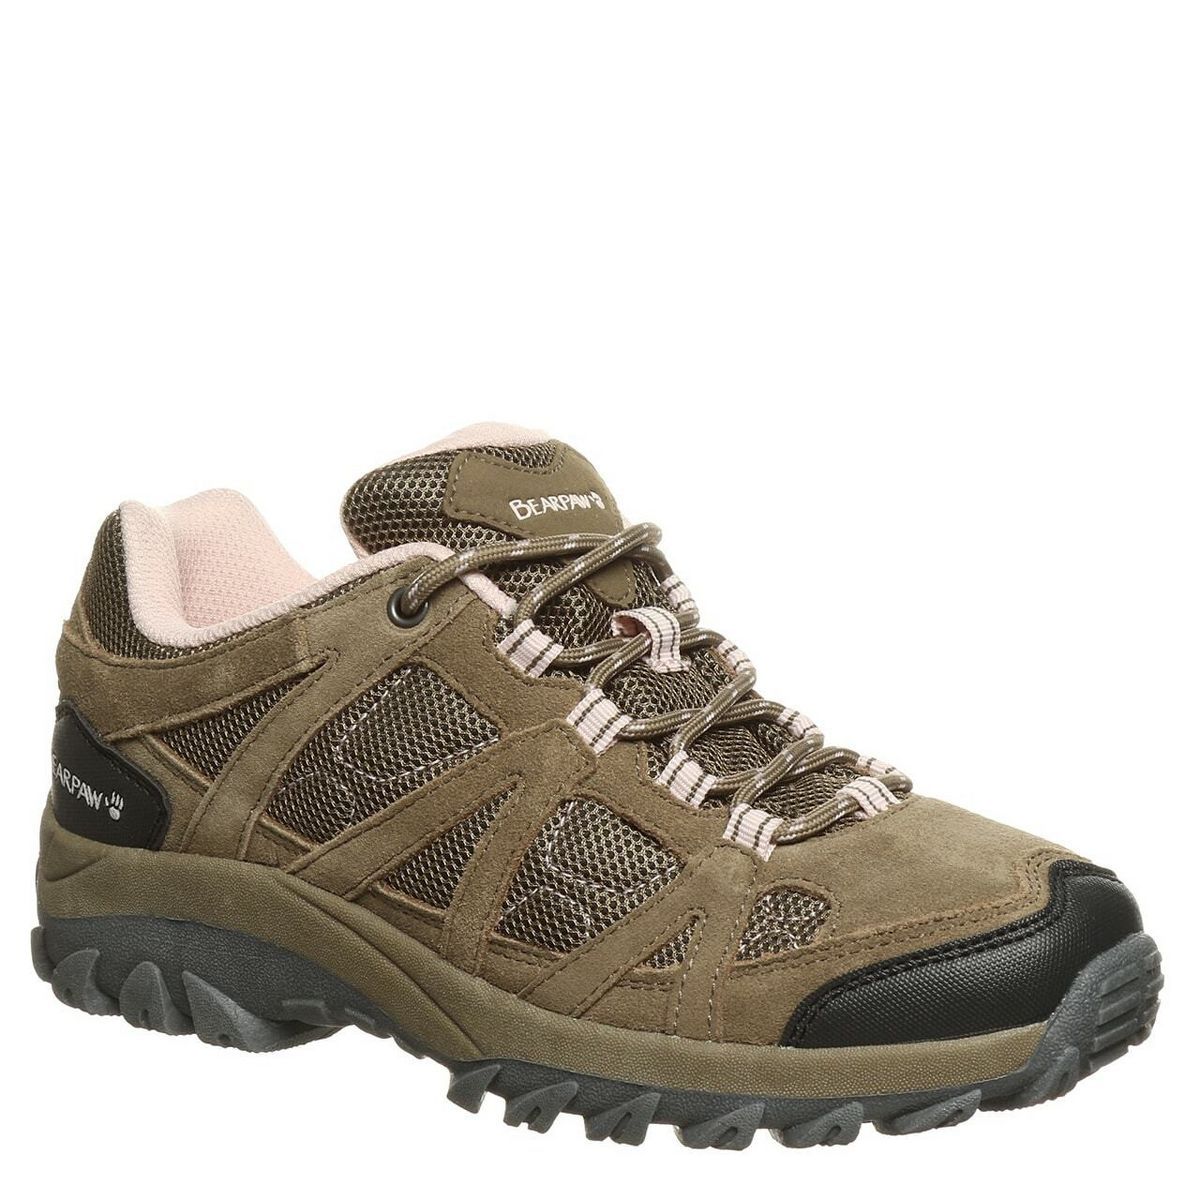 Bearpaw Women's Olympus Hiking Shoes | Natural | Size 9 | Target